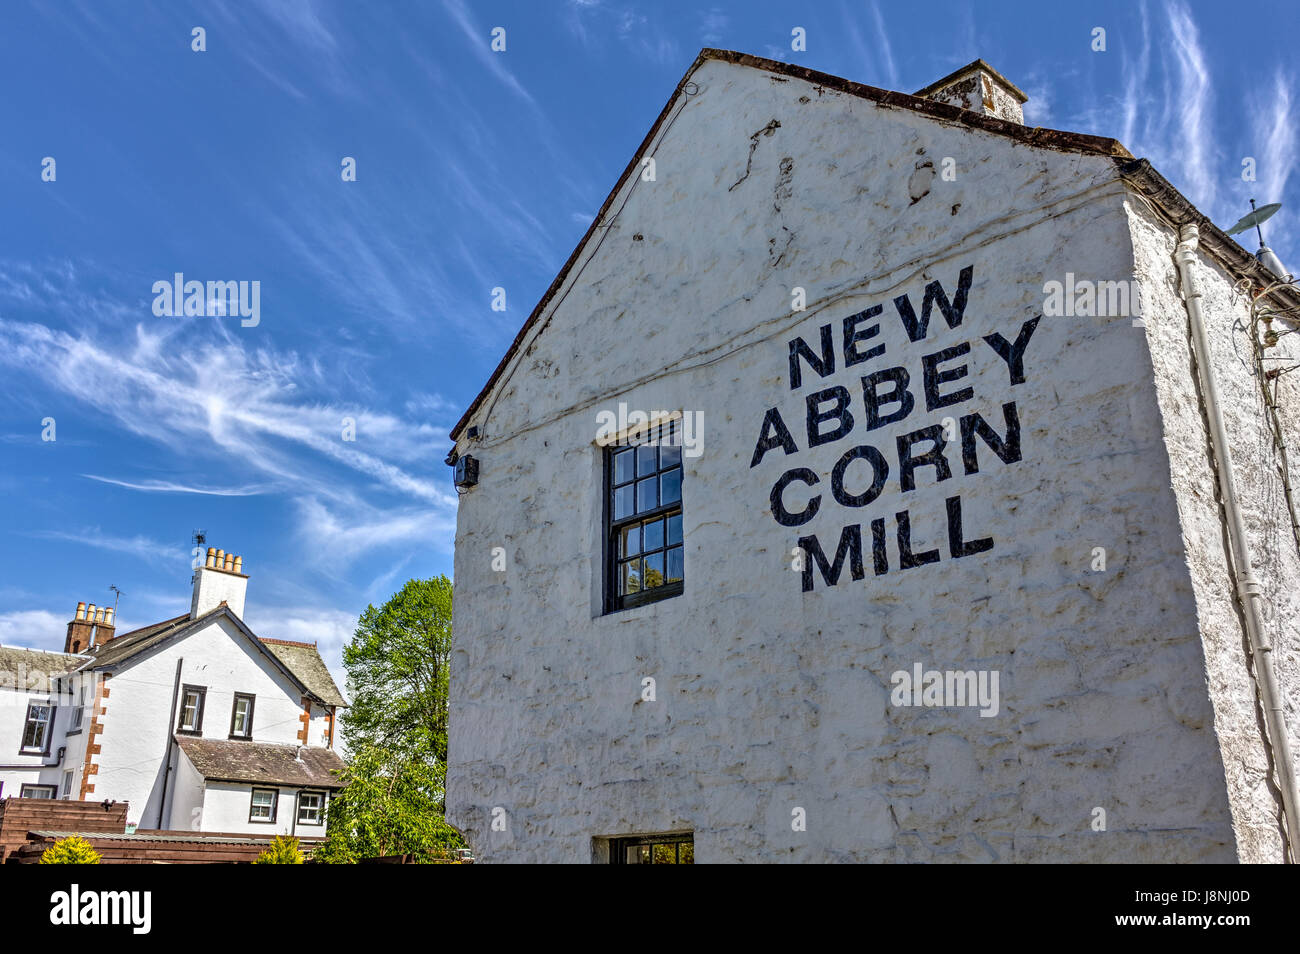 Xviii secolo Corn Mill, di proprietà di ambiente storico di Scozia e aperta al pubblico nel nuovo Abbey, Dumfries and Galloway, Scozia. Immagine hdr. Foto Stock